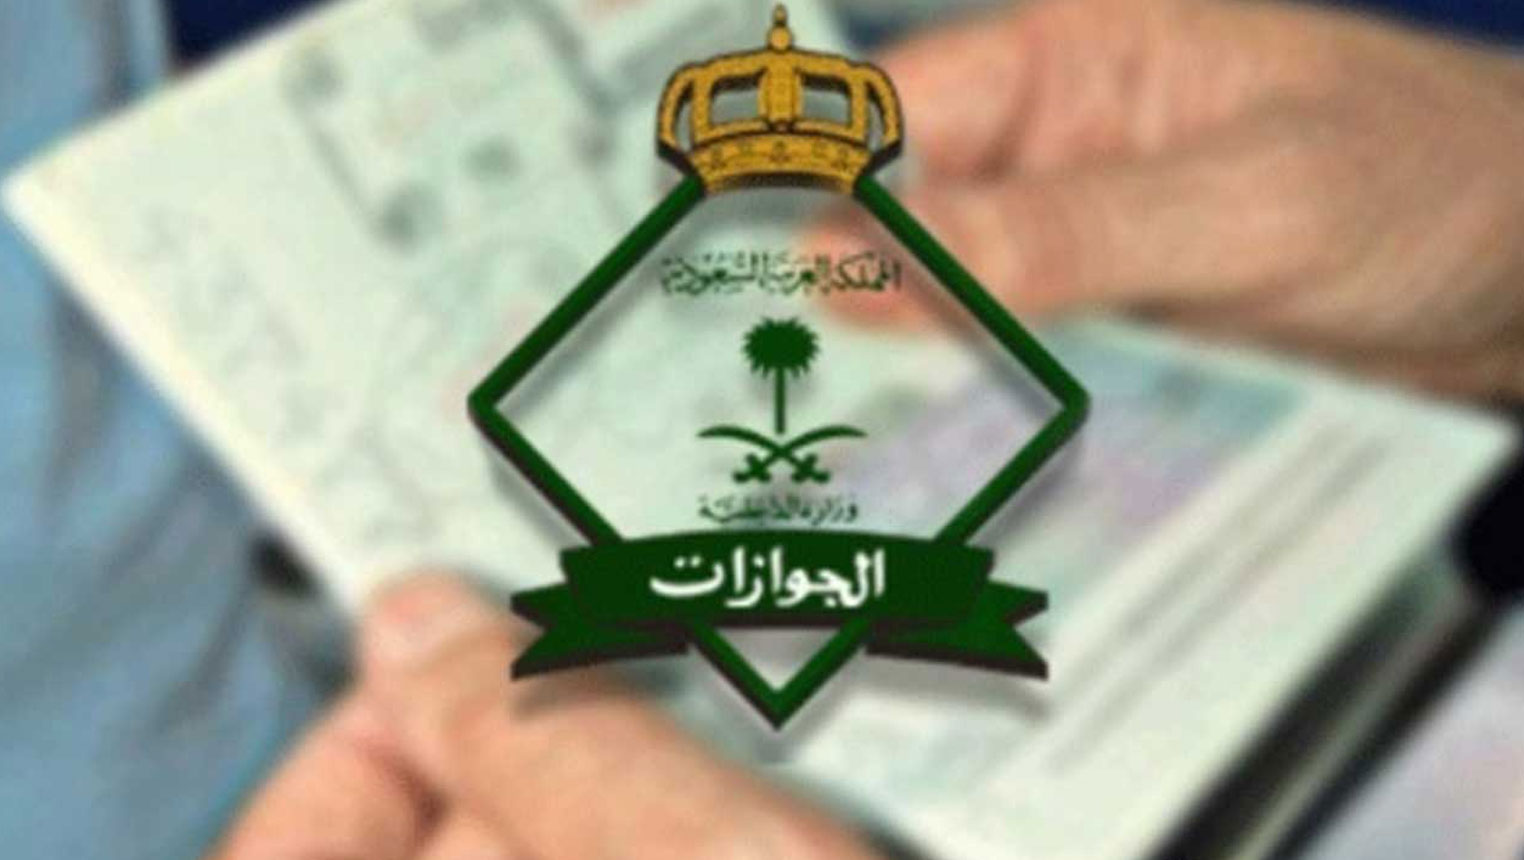 تحميل نموذج إصدار رخصة إقامة وخطوات تعبئة النموذج موقع وزارة الداخلية السعودية